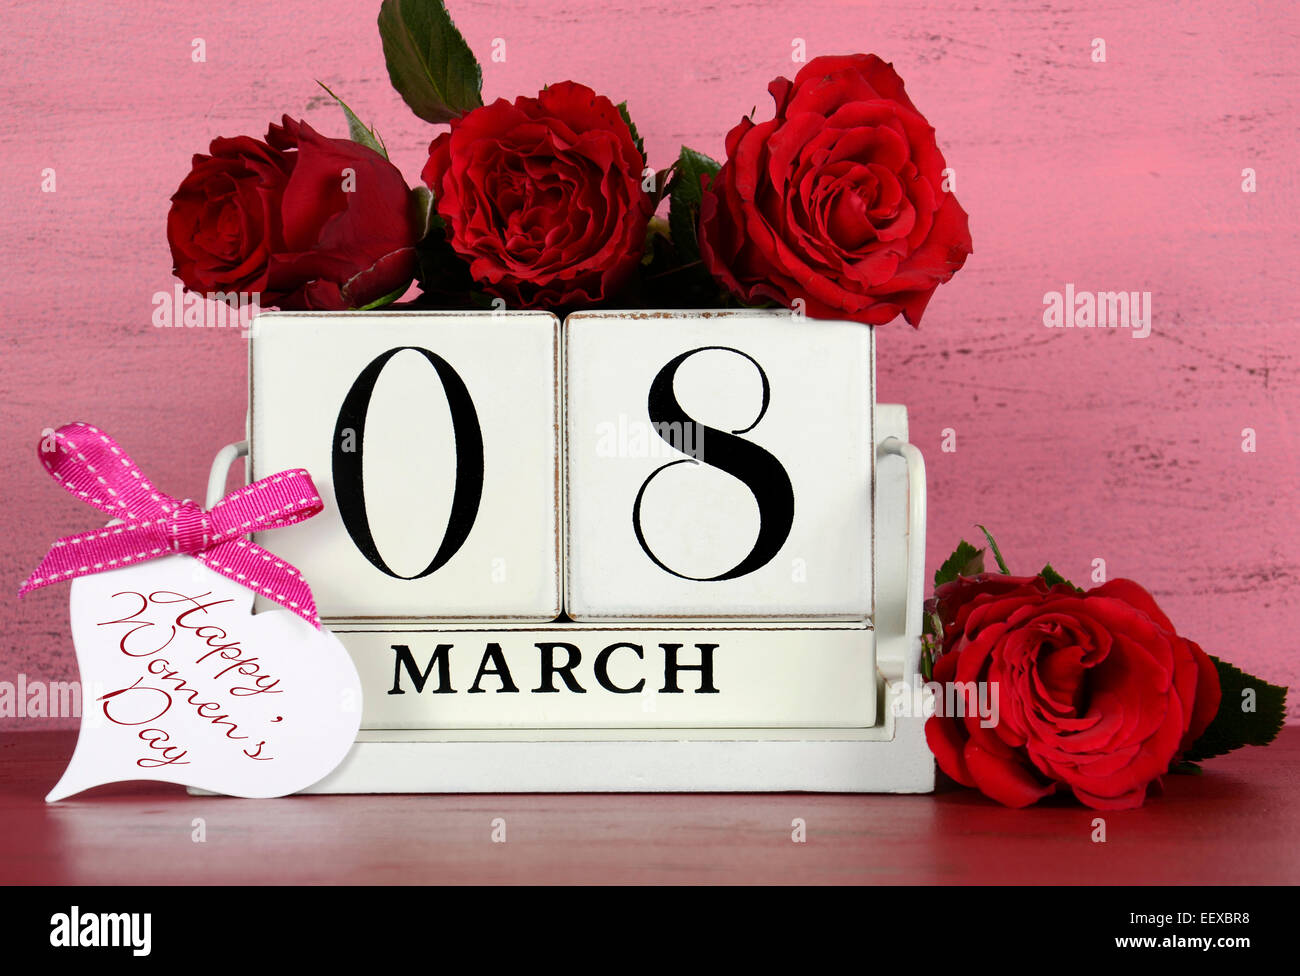 Calendrier en bois blanc vintage pour le 8 mars, Journée internationale des femmes, avec des roses rouges sur shabby chic rose et rouge fond Banque D'Images